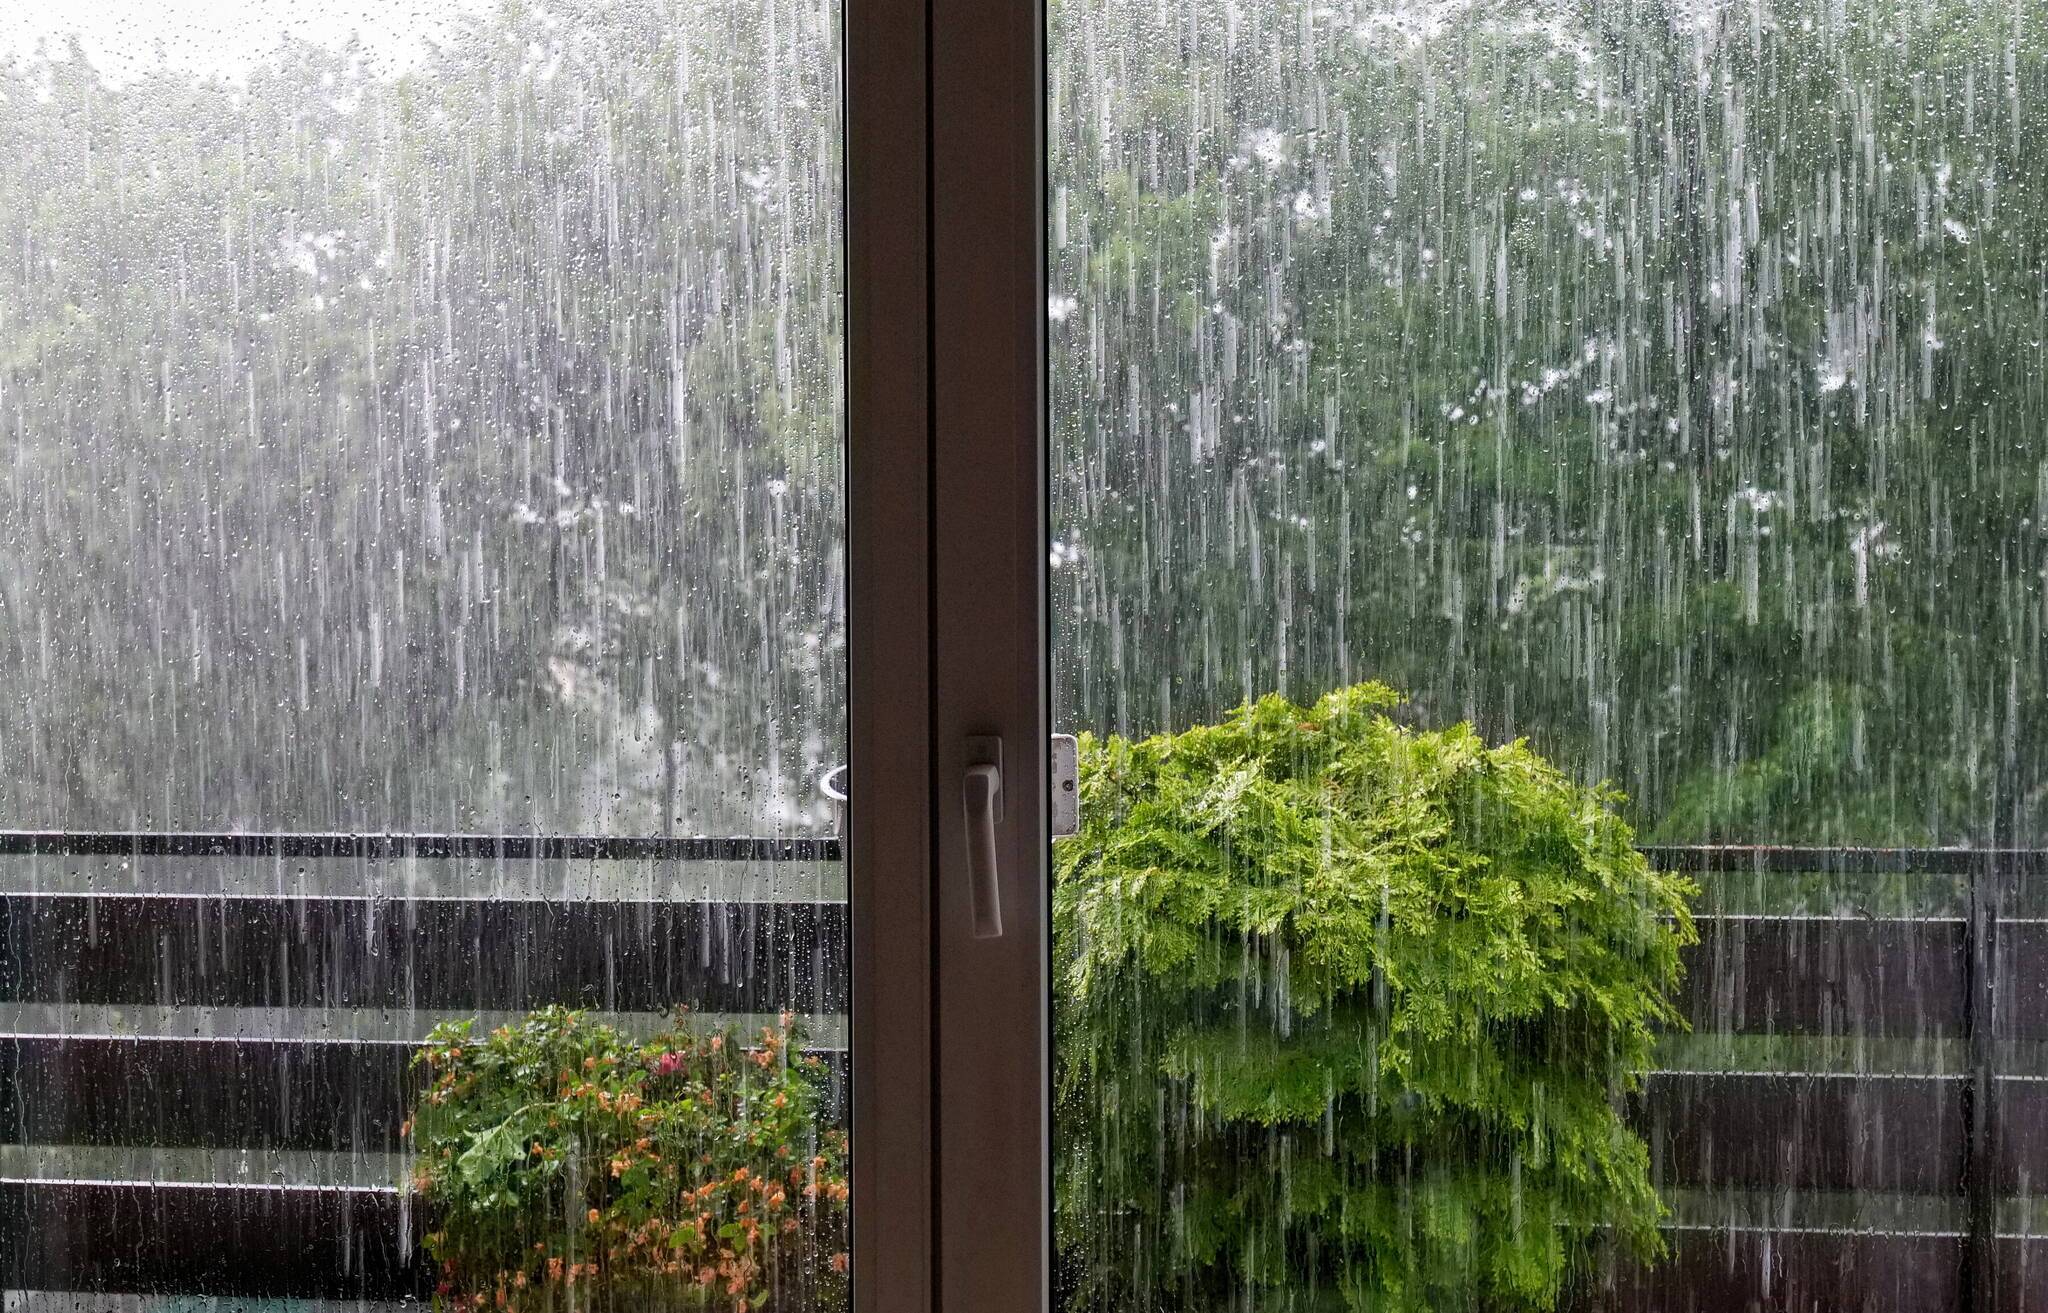  Ende Mai regnete es in Wuppertal zumindest zeitweise heftig. 